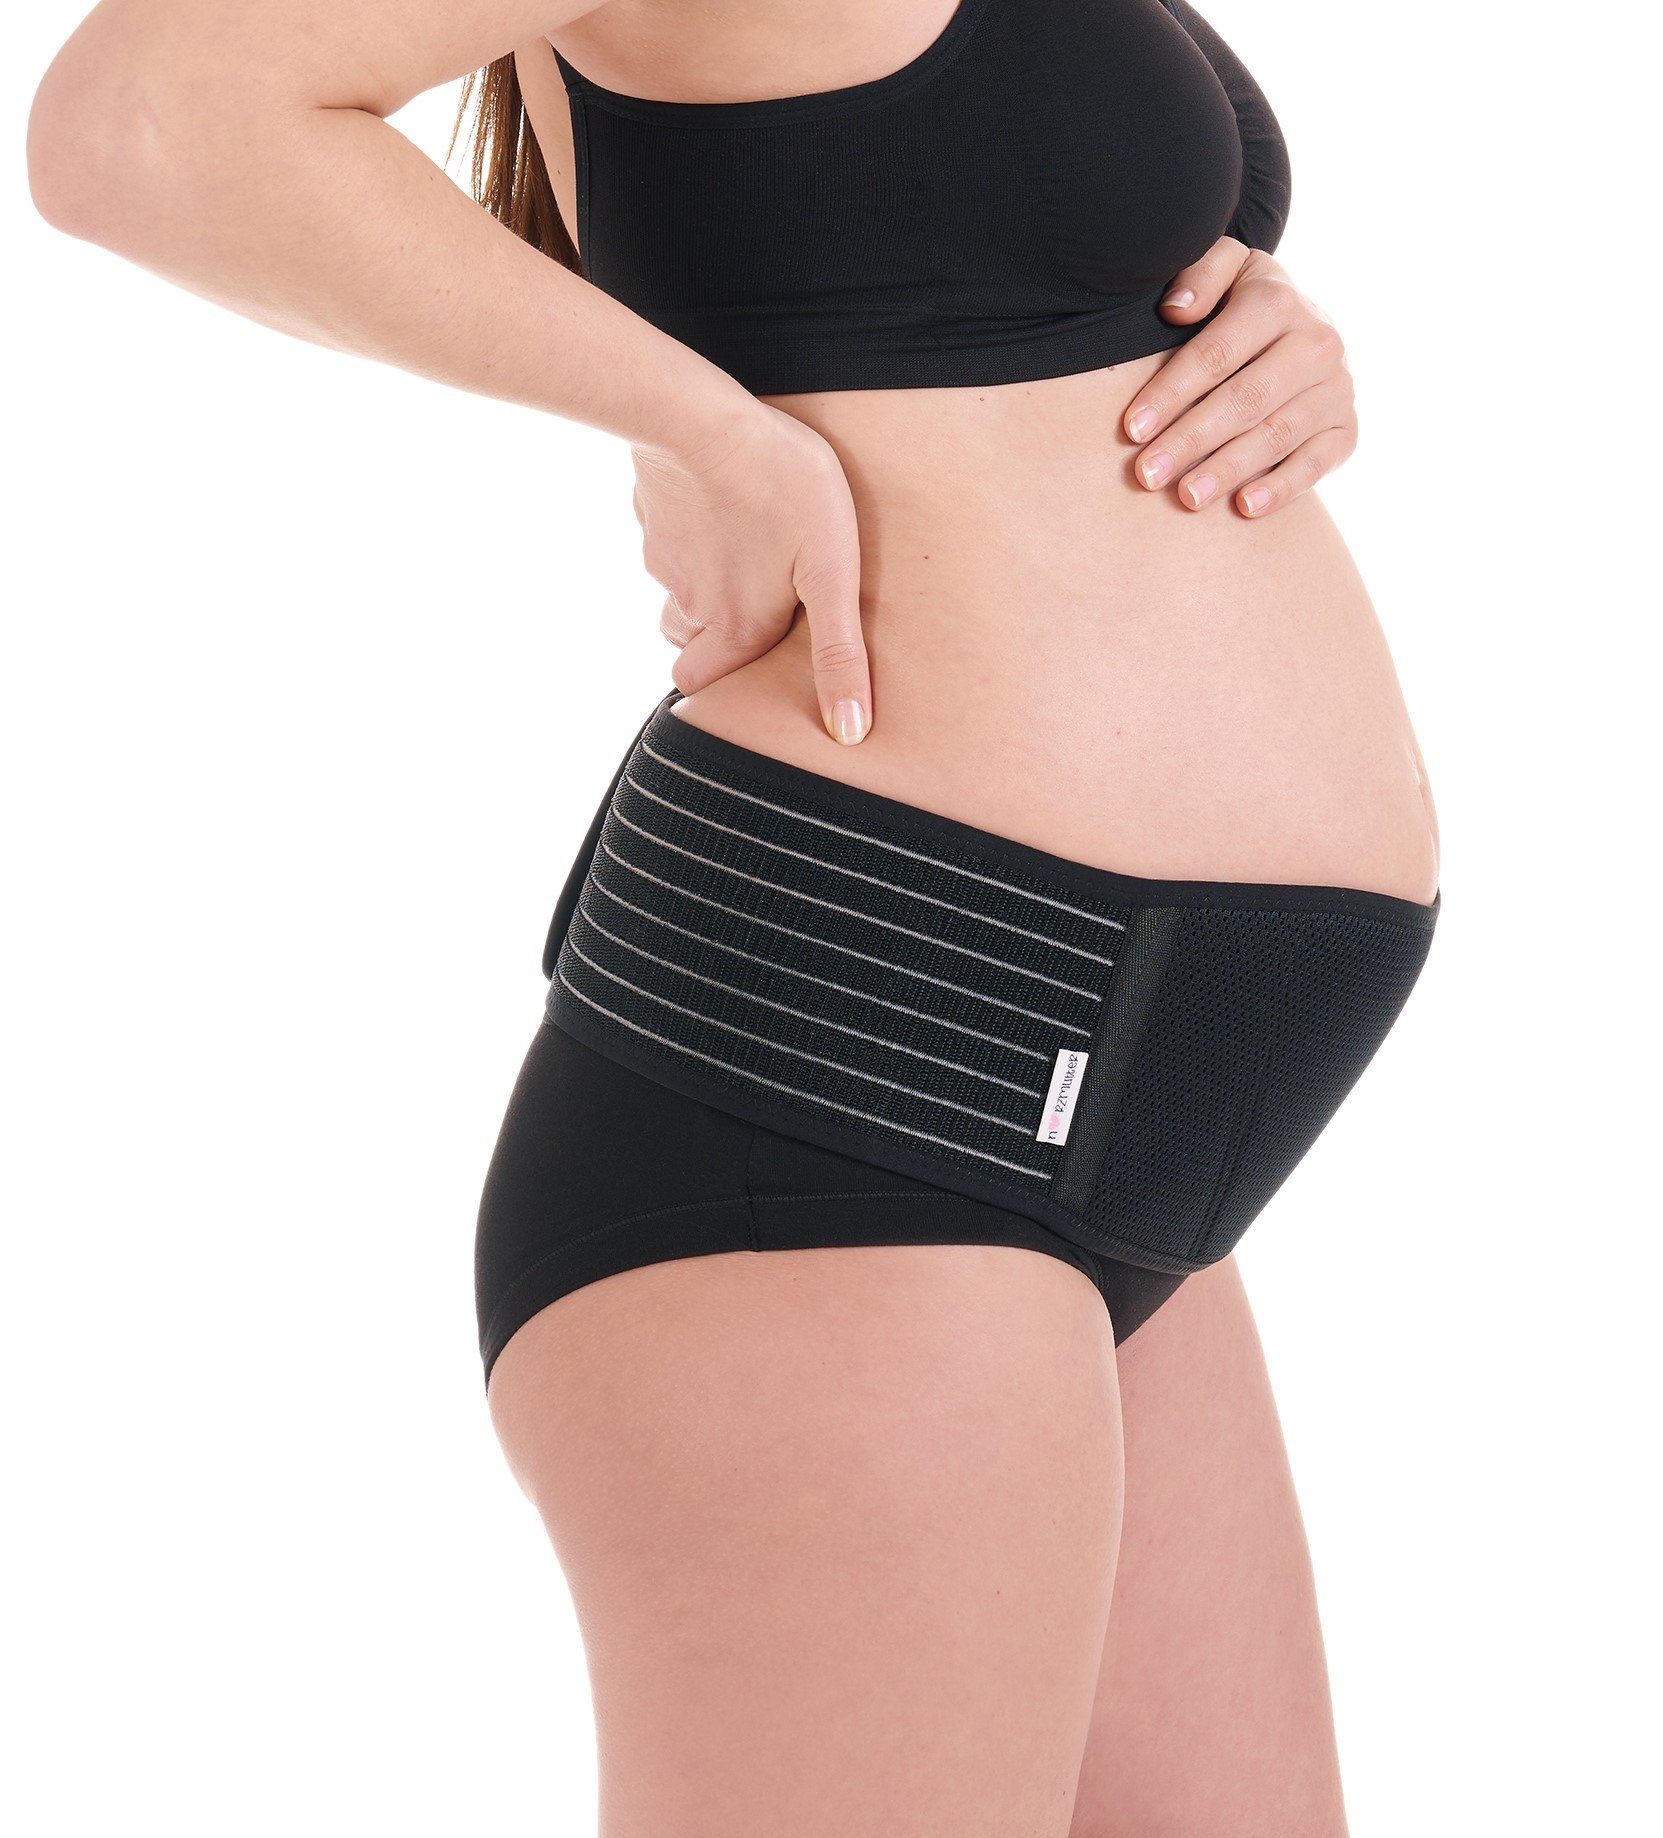 VITALWORXX Schwangerschaftsgürtel Schwangerschafts-Stützgürtel mit